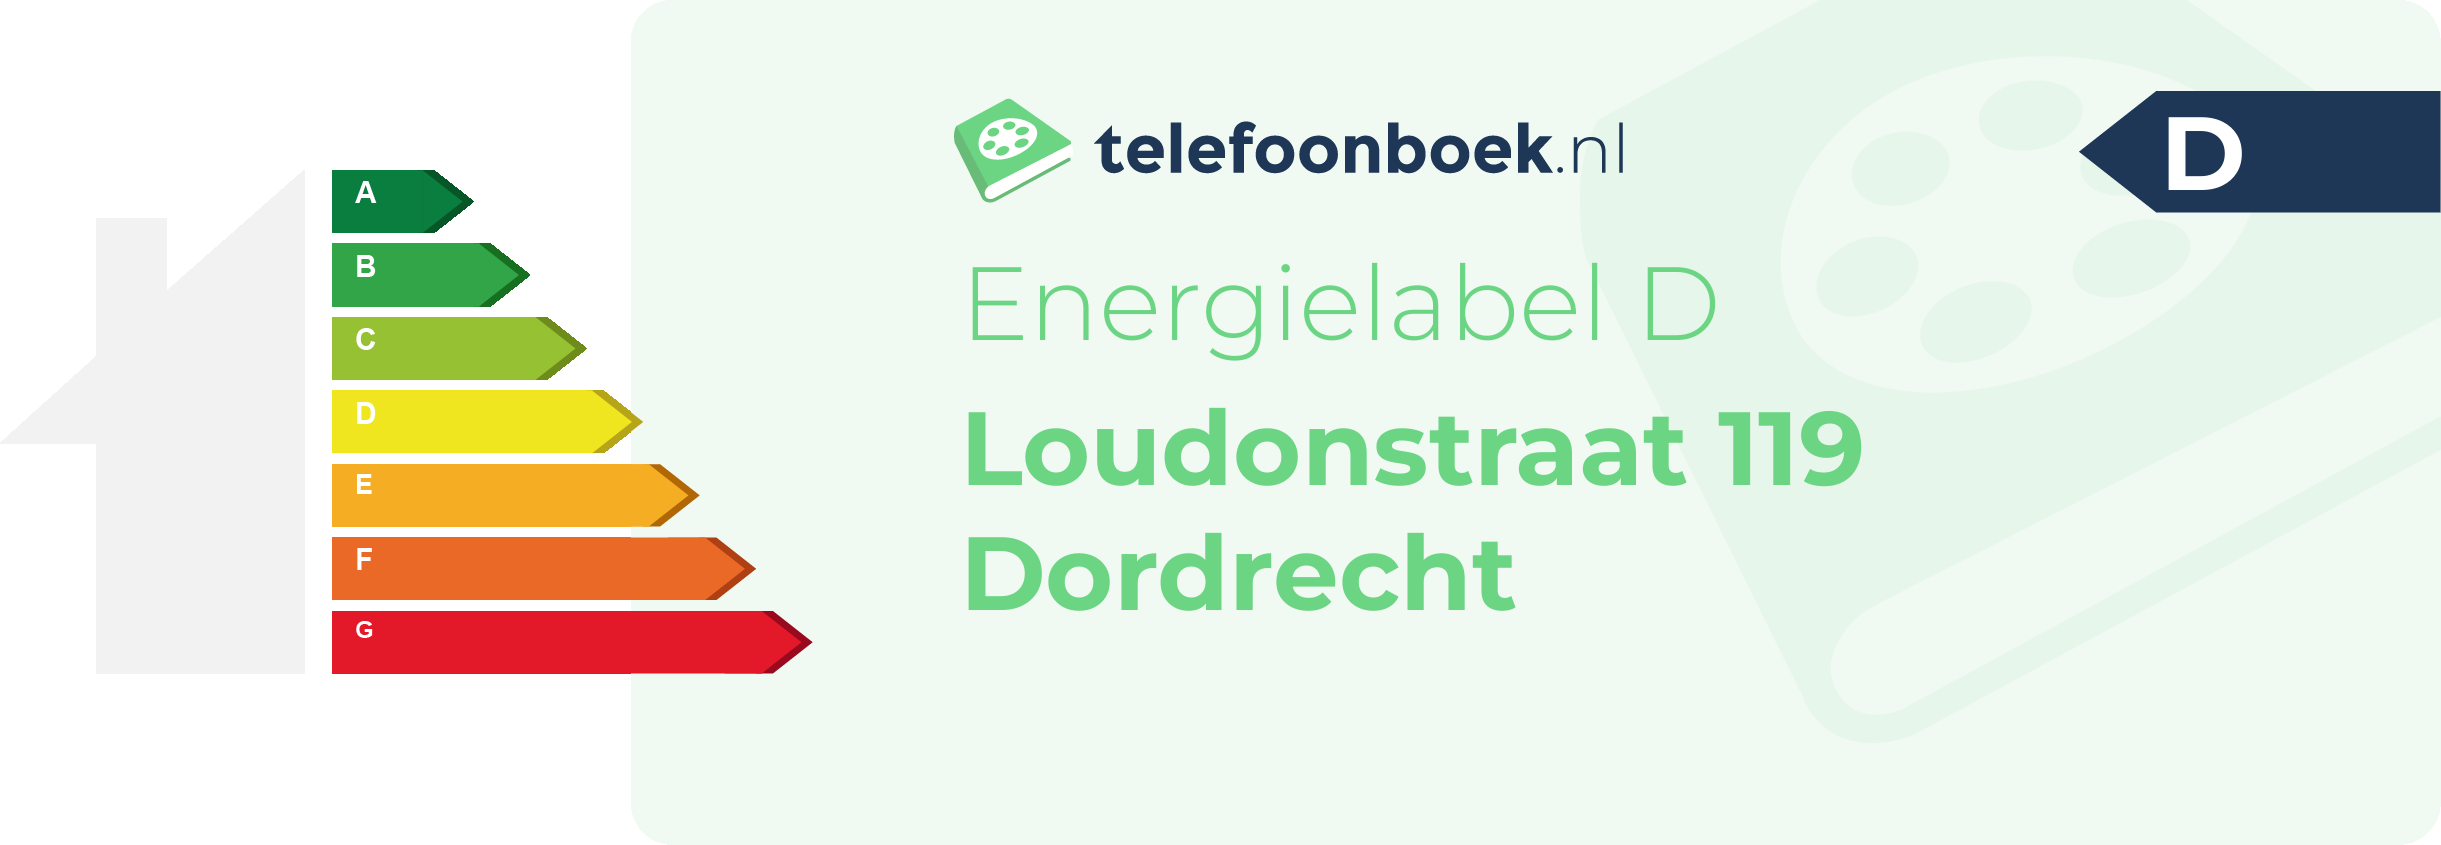 Energielabel Loudonstraat 119 Dordrecht